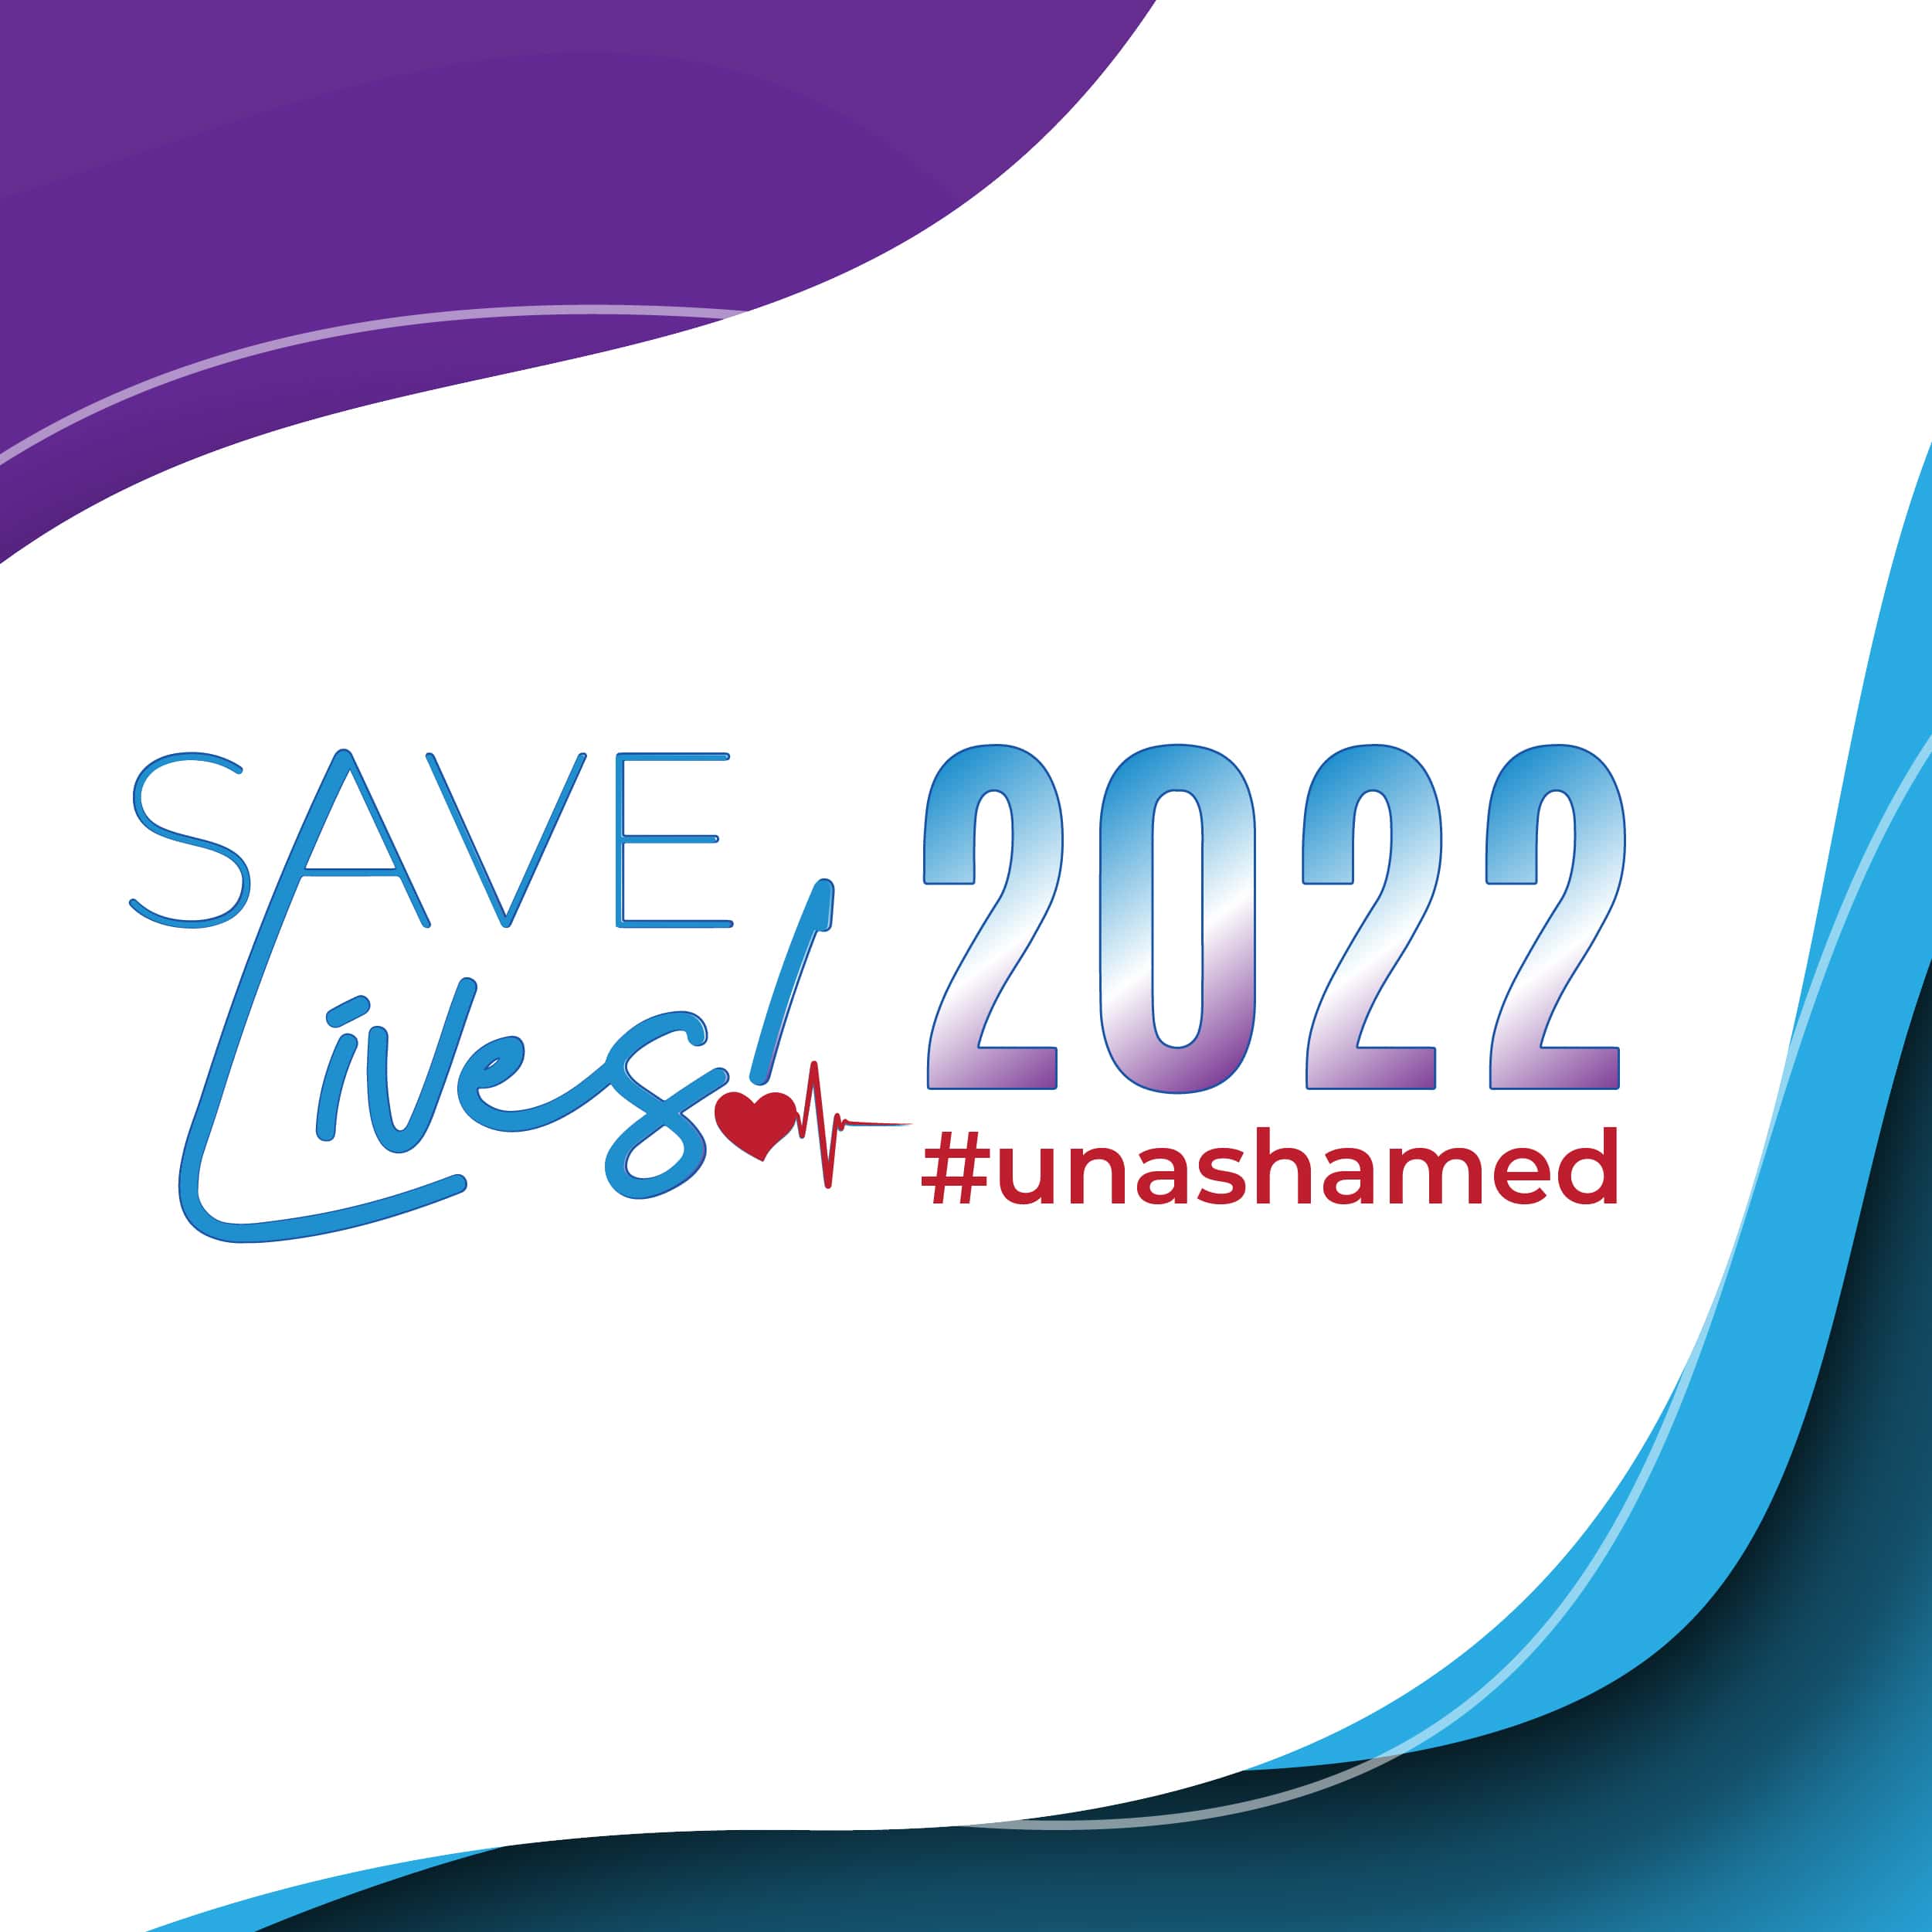 Save Lives 2022 #unashamed